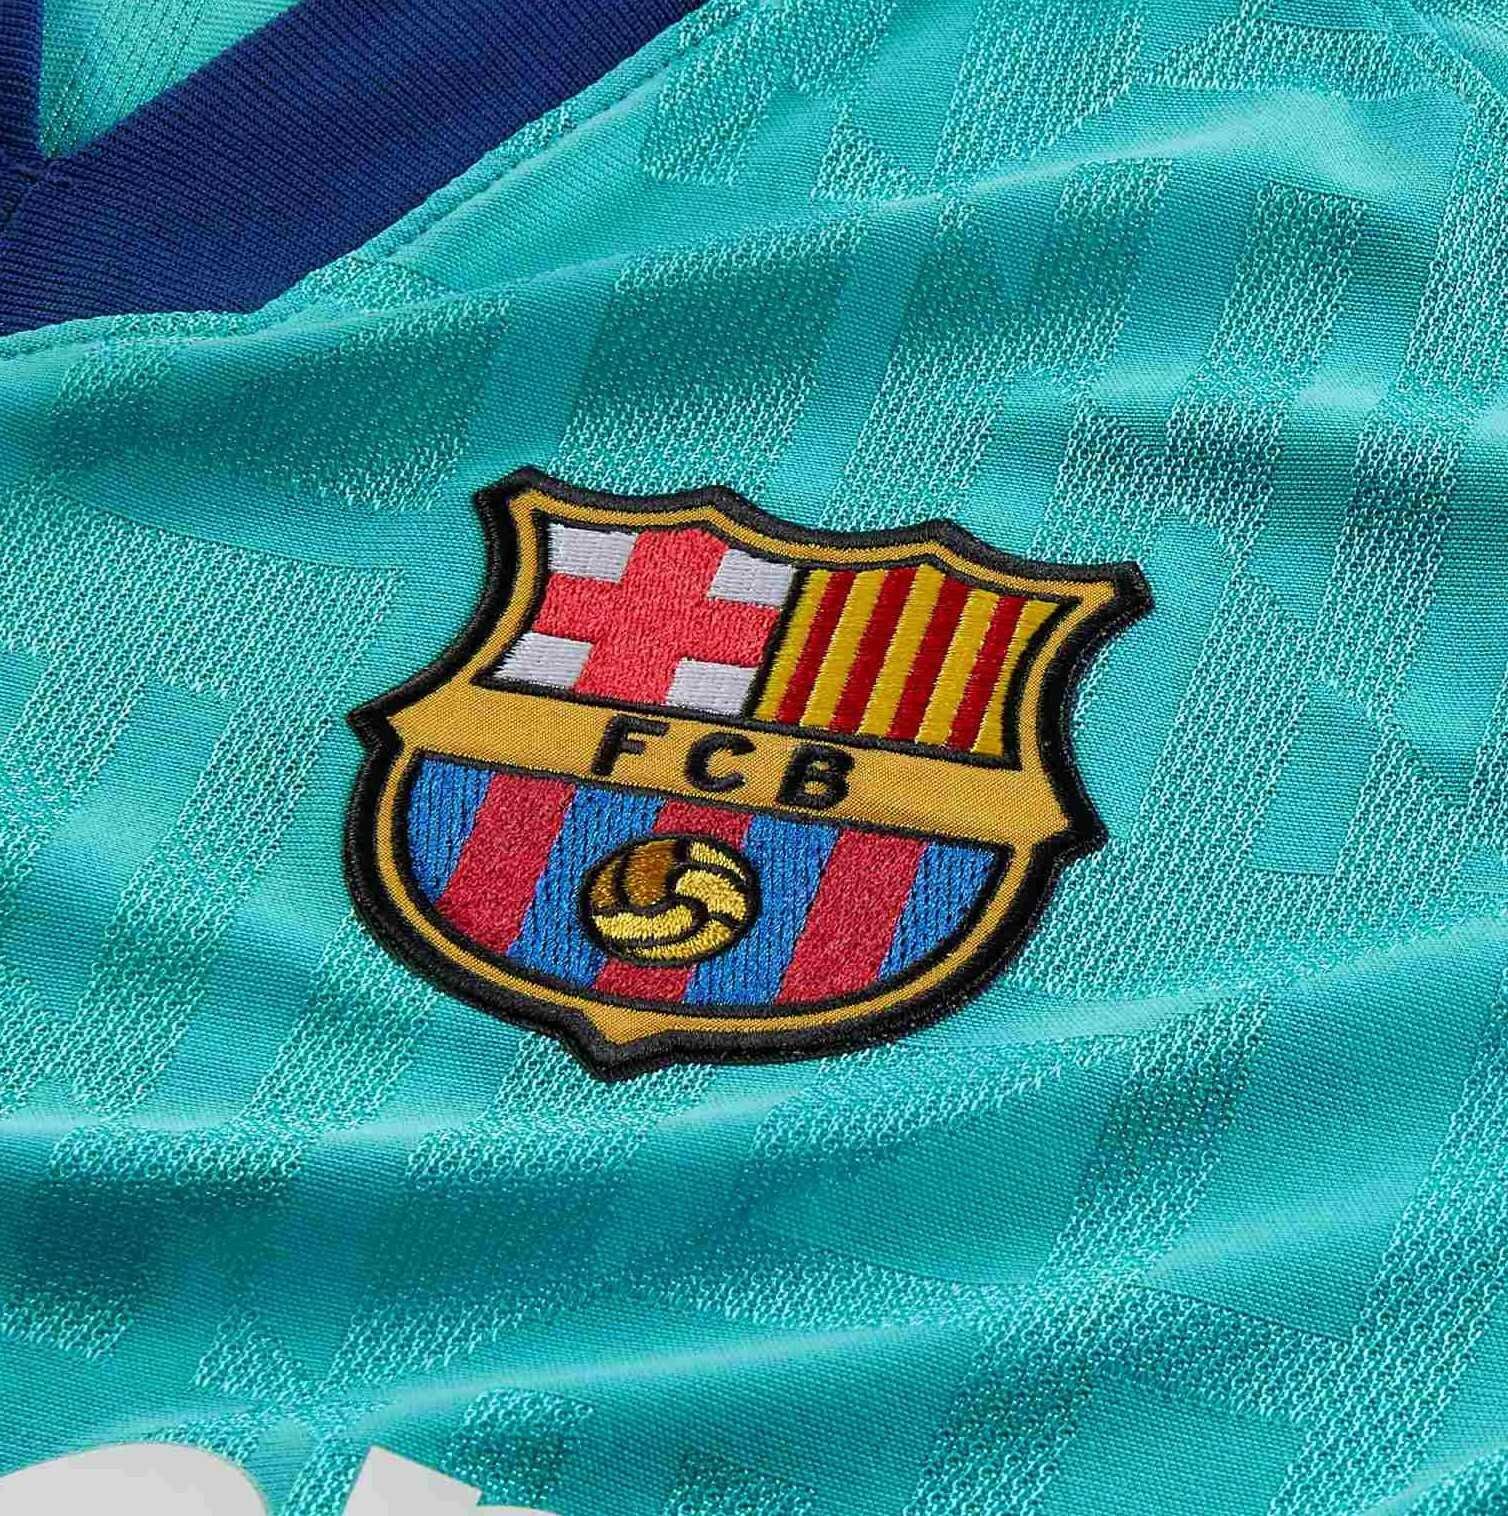 Barcelona derde shirt seizoen 2019/2020